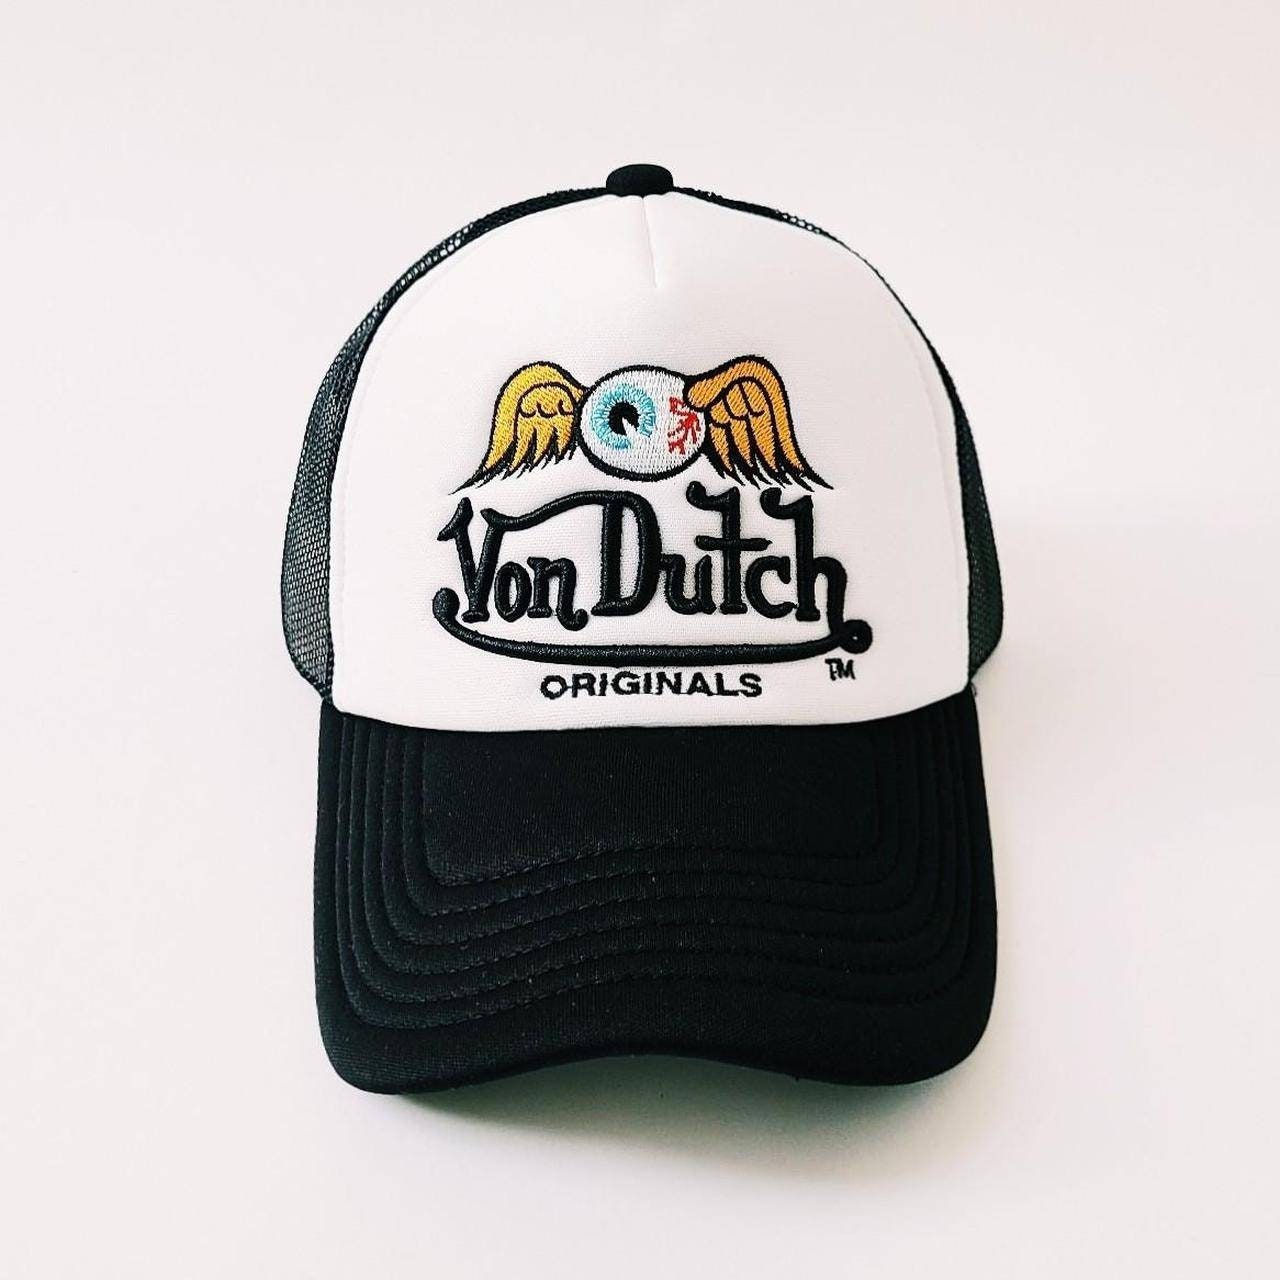 Von Dutchその他